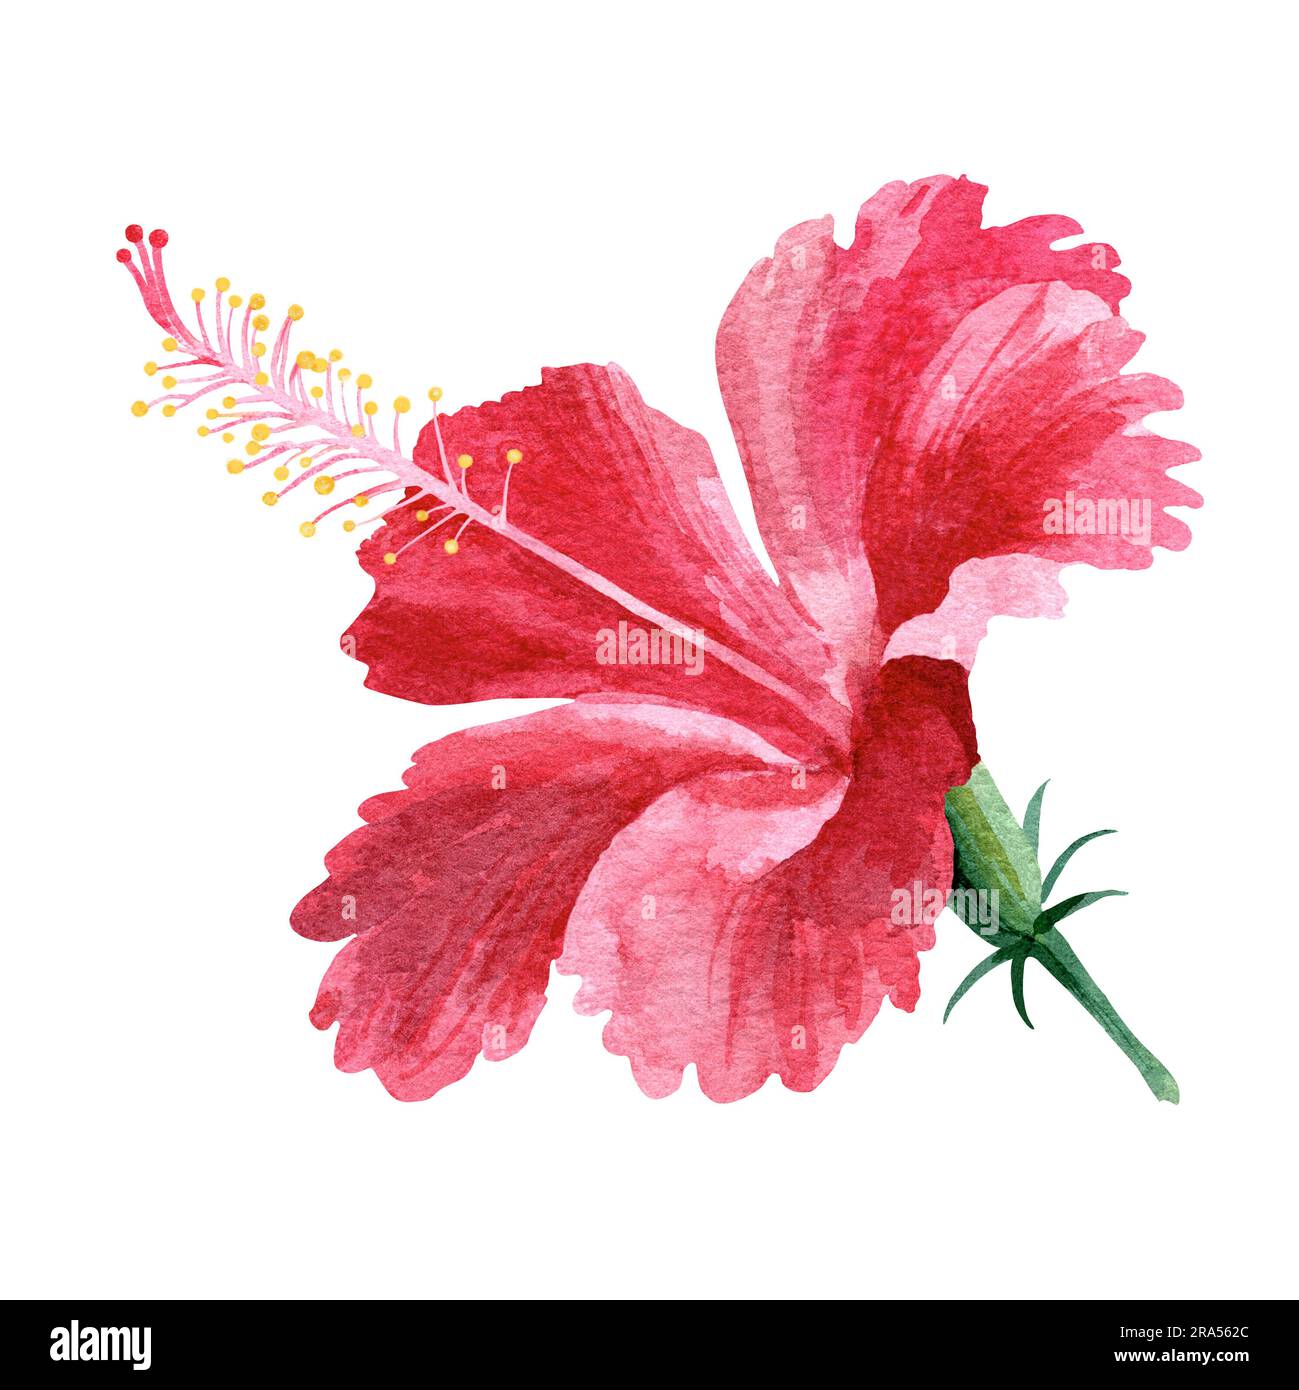 Leuchtend rosa Hibiskusblume. Tropische Blumen. Aquarelle Abbildung auf weißem Hintergrund. Zeichnung für das Design von Souvenirs, Postkarten, Postern Stockfoto